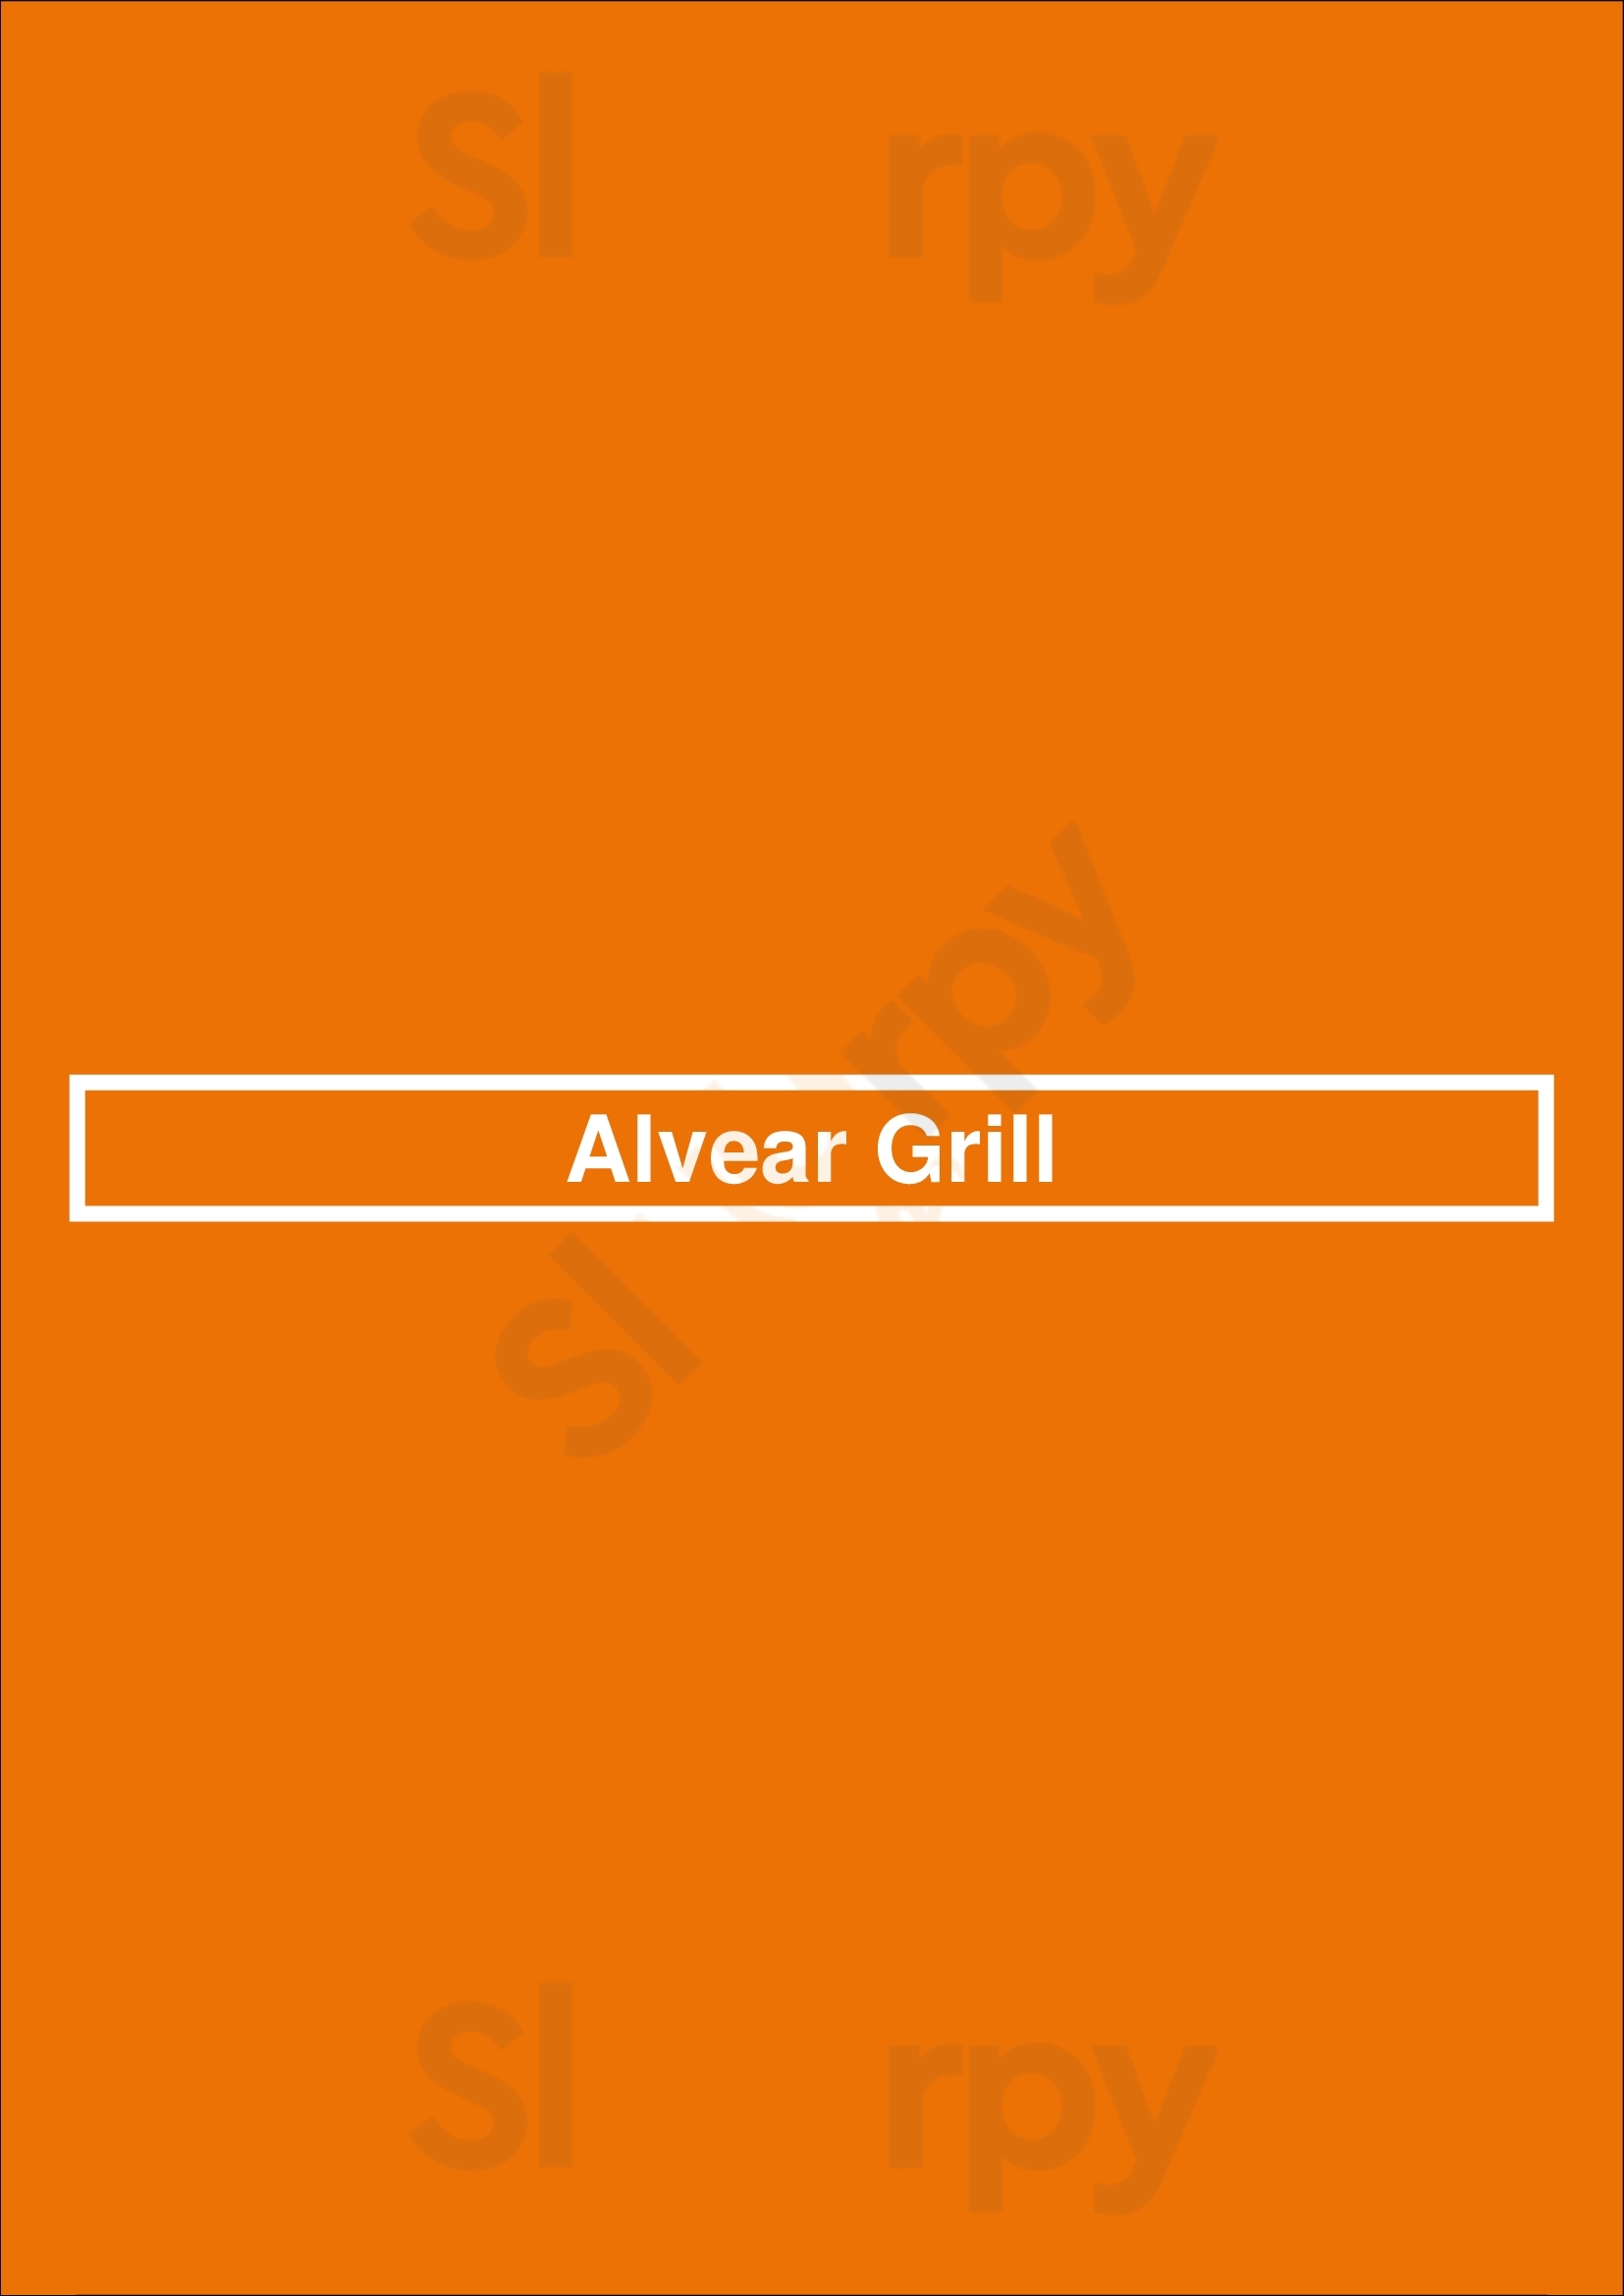 Alvear Grill Buenos Aires Menu - 1